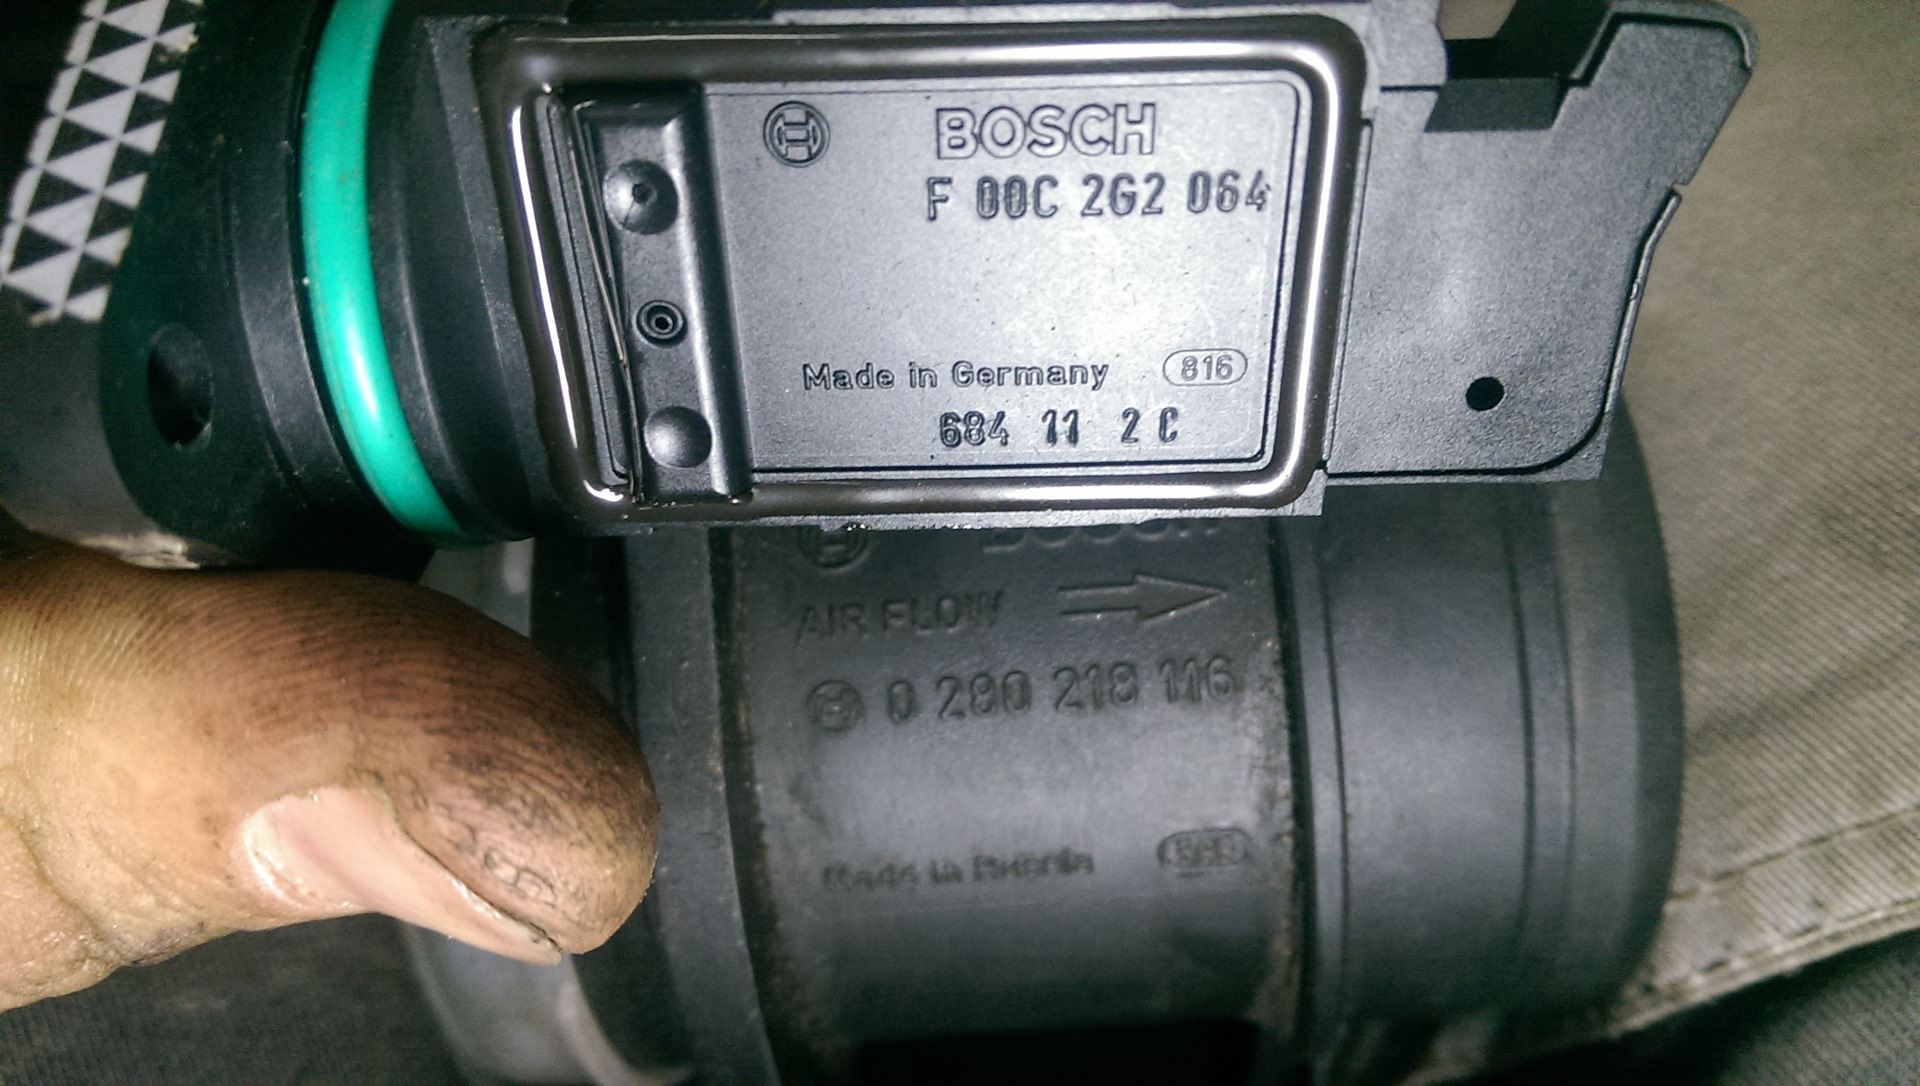 Дат дмрв. ДМРВ Калина 1.6 8кл. ДМРВ Калина 2 16 клапанов. ДМРВ 116 Bosch. ДМРВ Bosch f 00c 2g2 060 Озон.